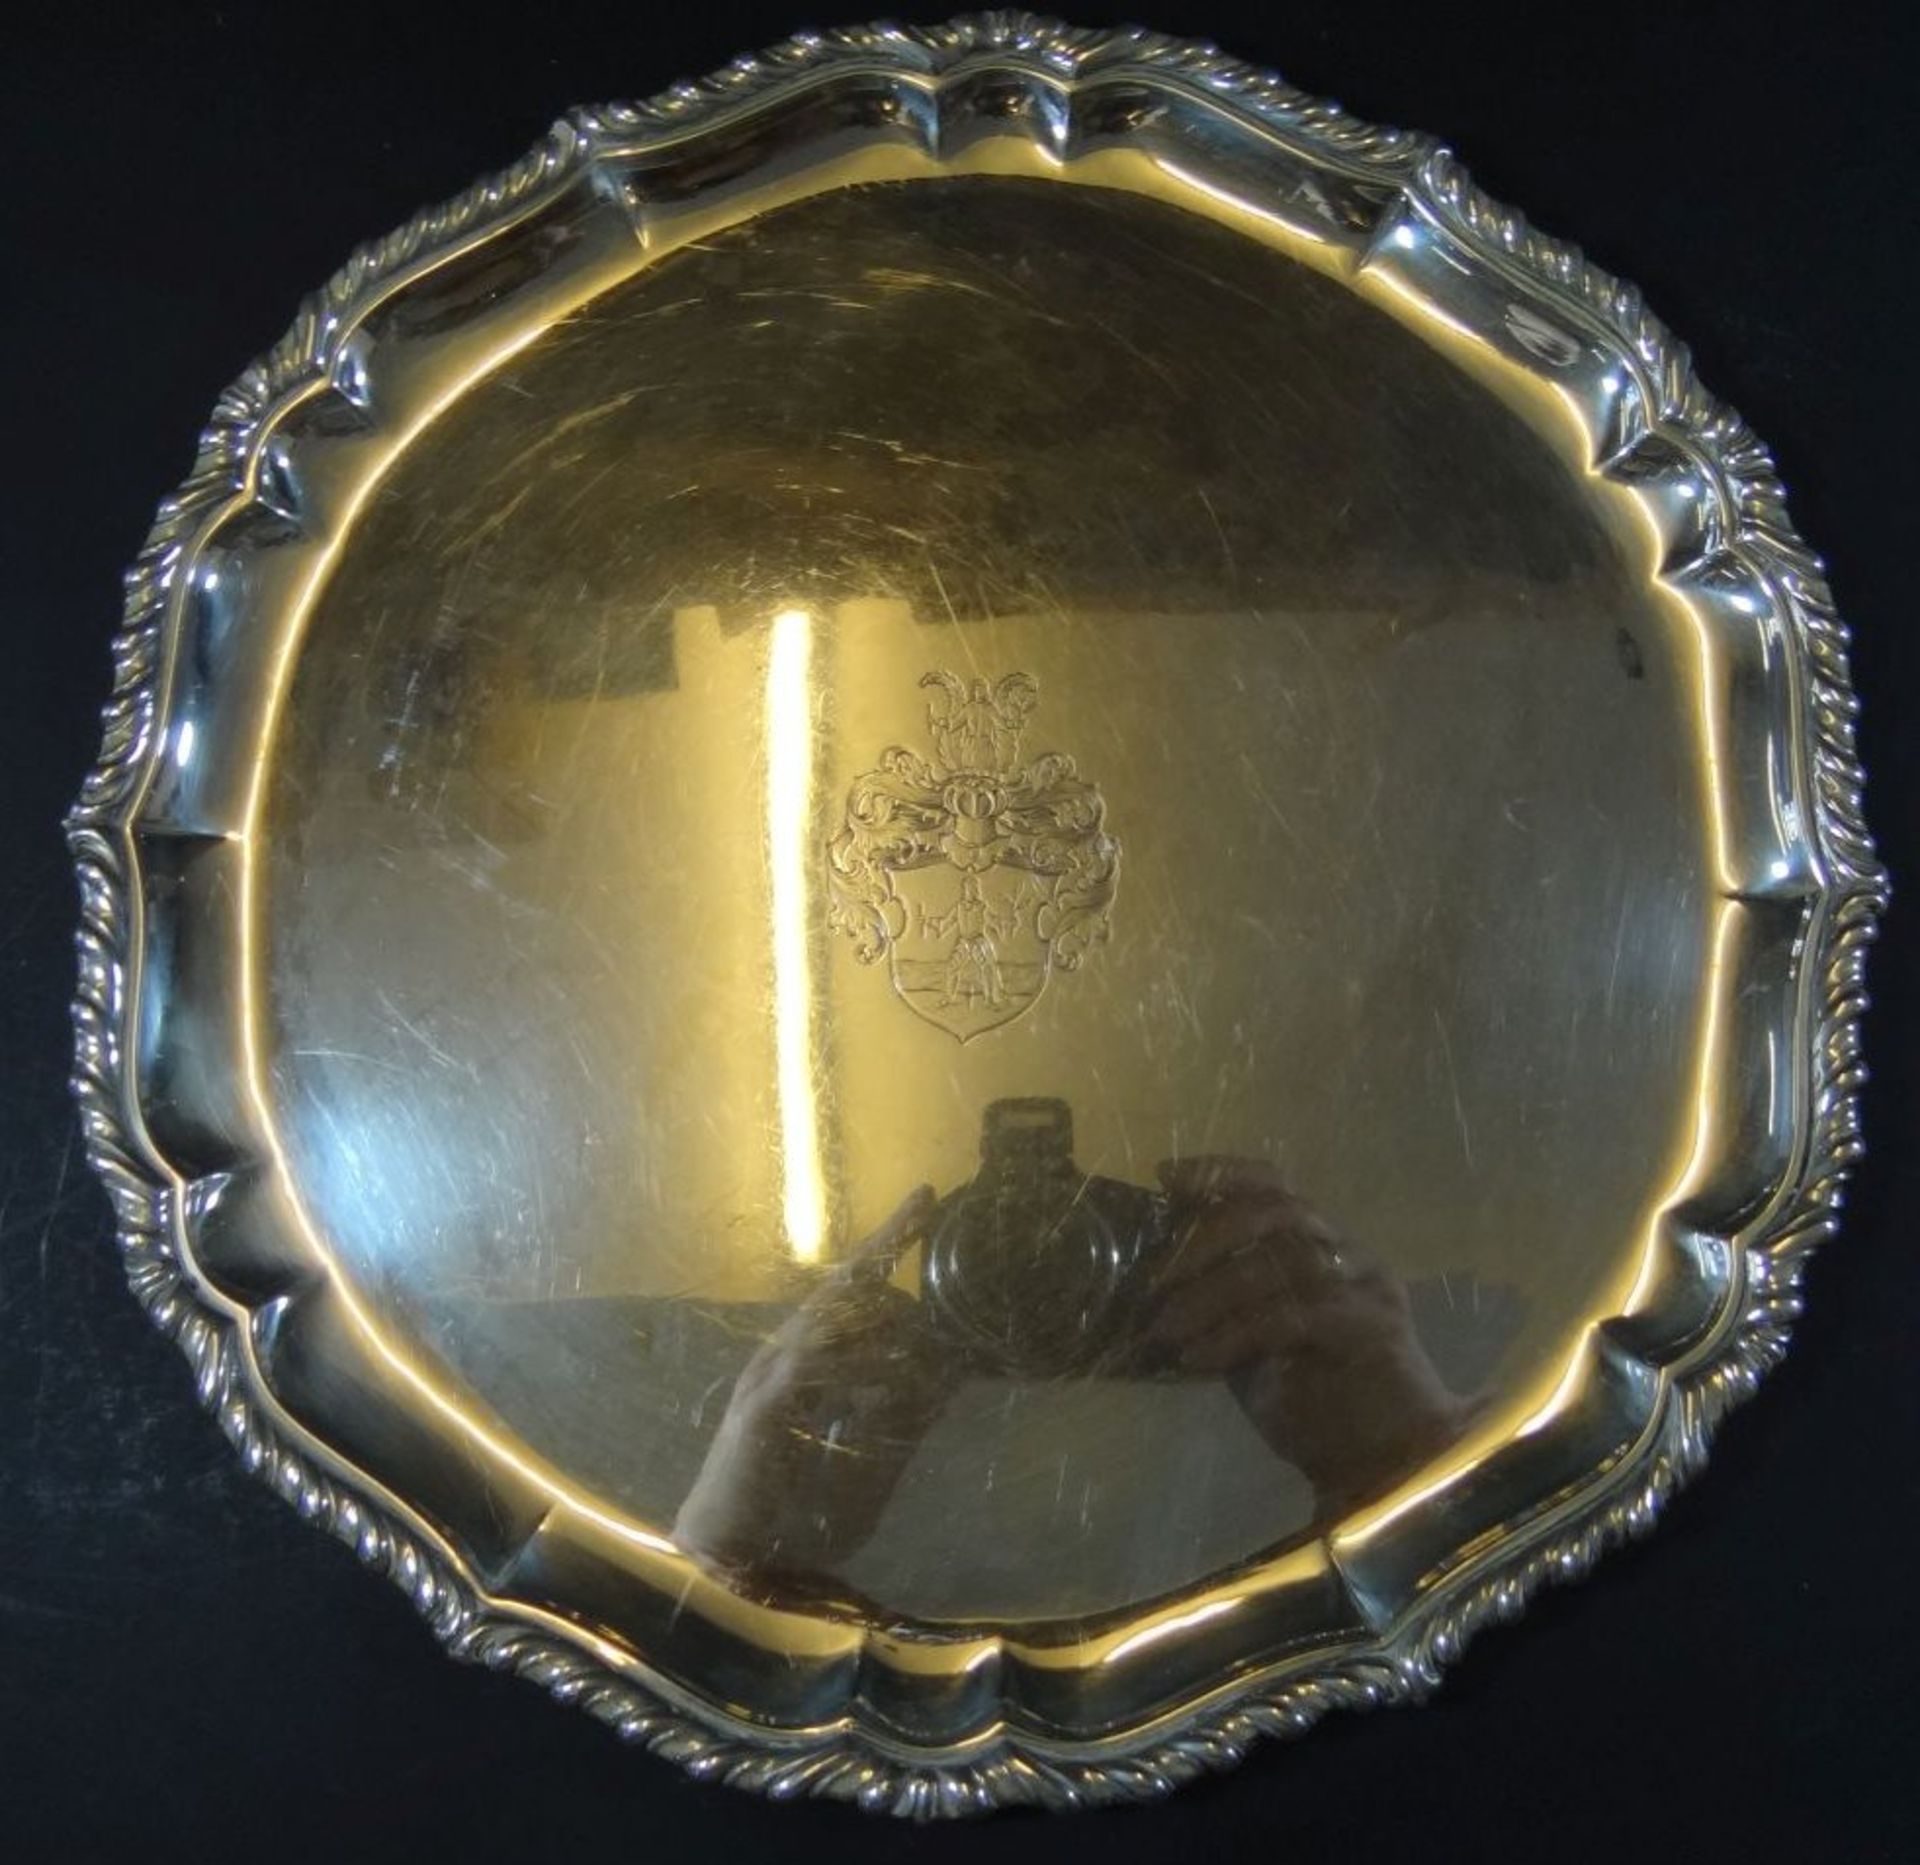 grosse Silberplatte-830-, mittig mit Wappengravur, rückseitig Datum 24.12.36, D-34 cm, 694 gr. - Bild 3 aus 7